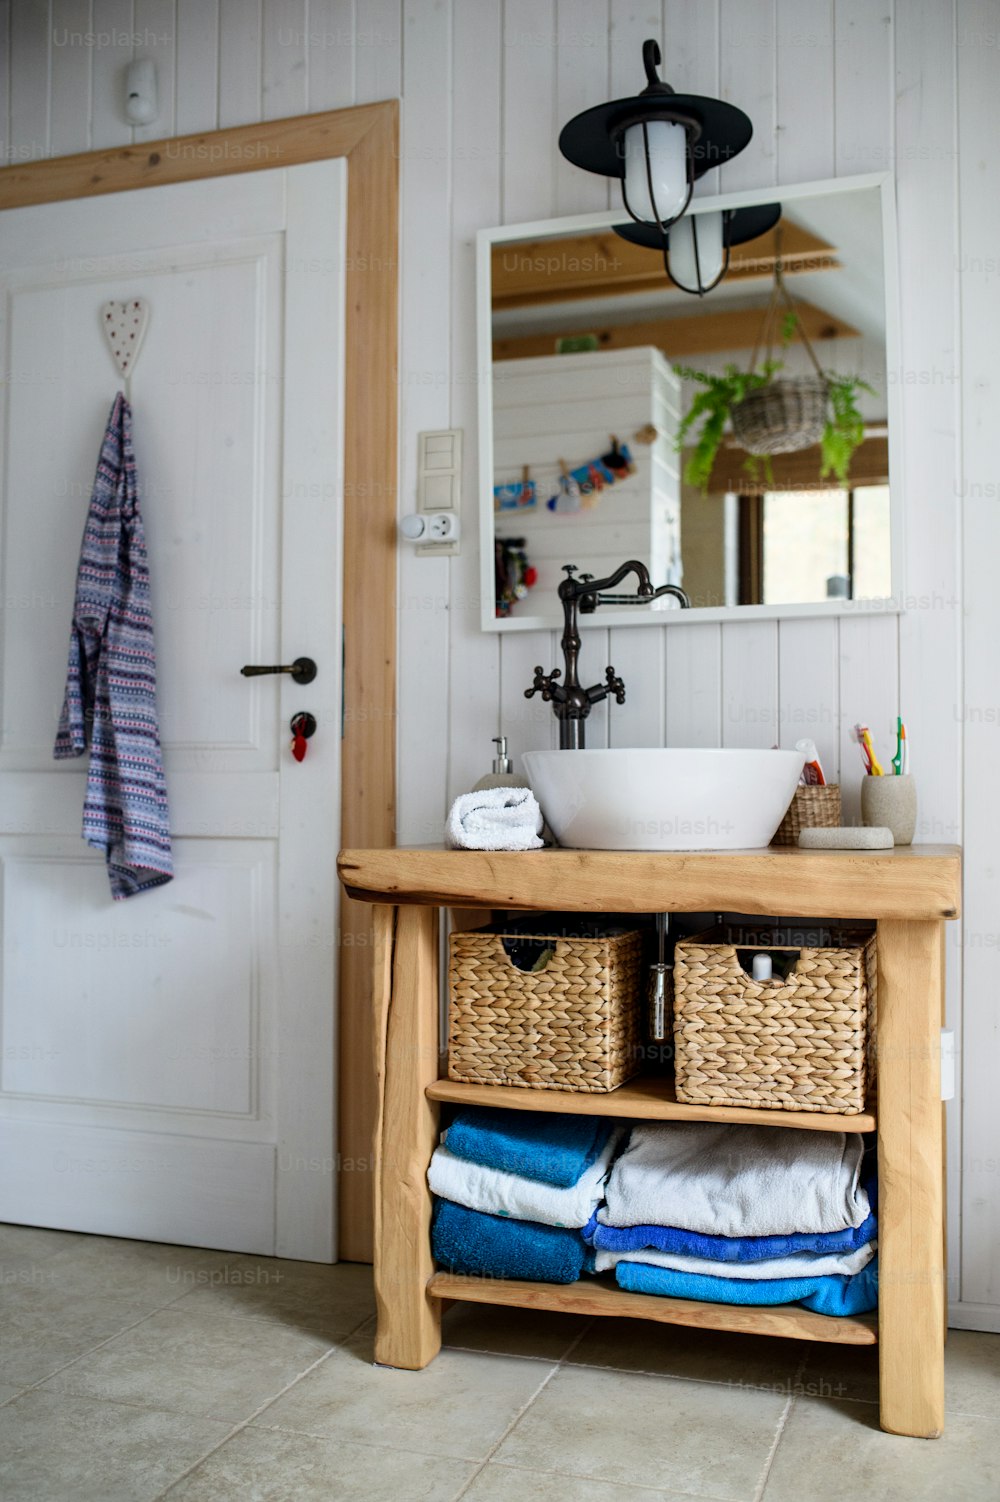 Lavandino, specchio e armadio in legno nel bagno vintage di casa.